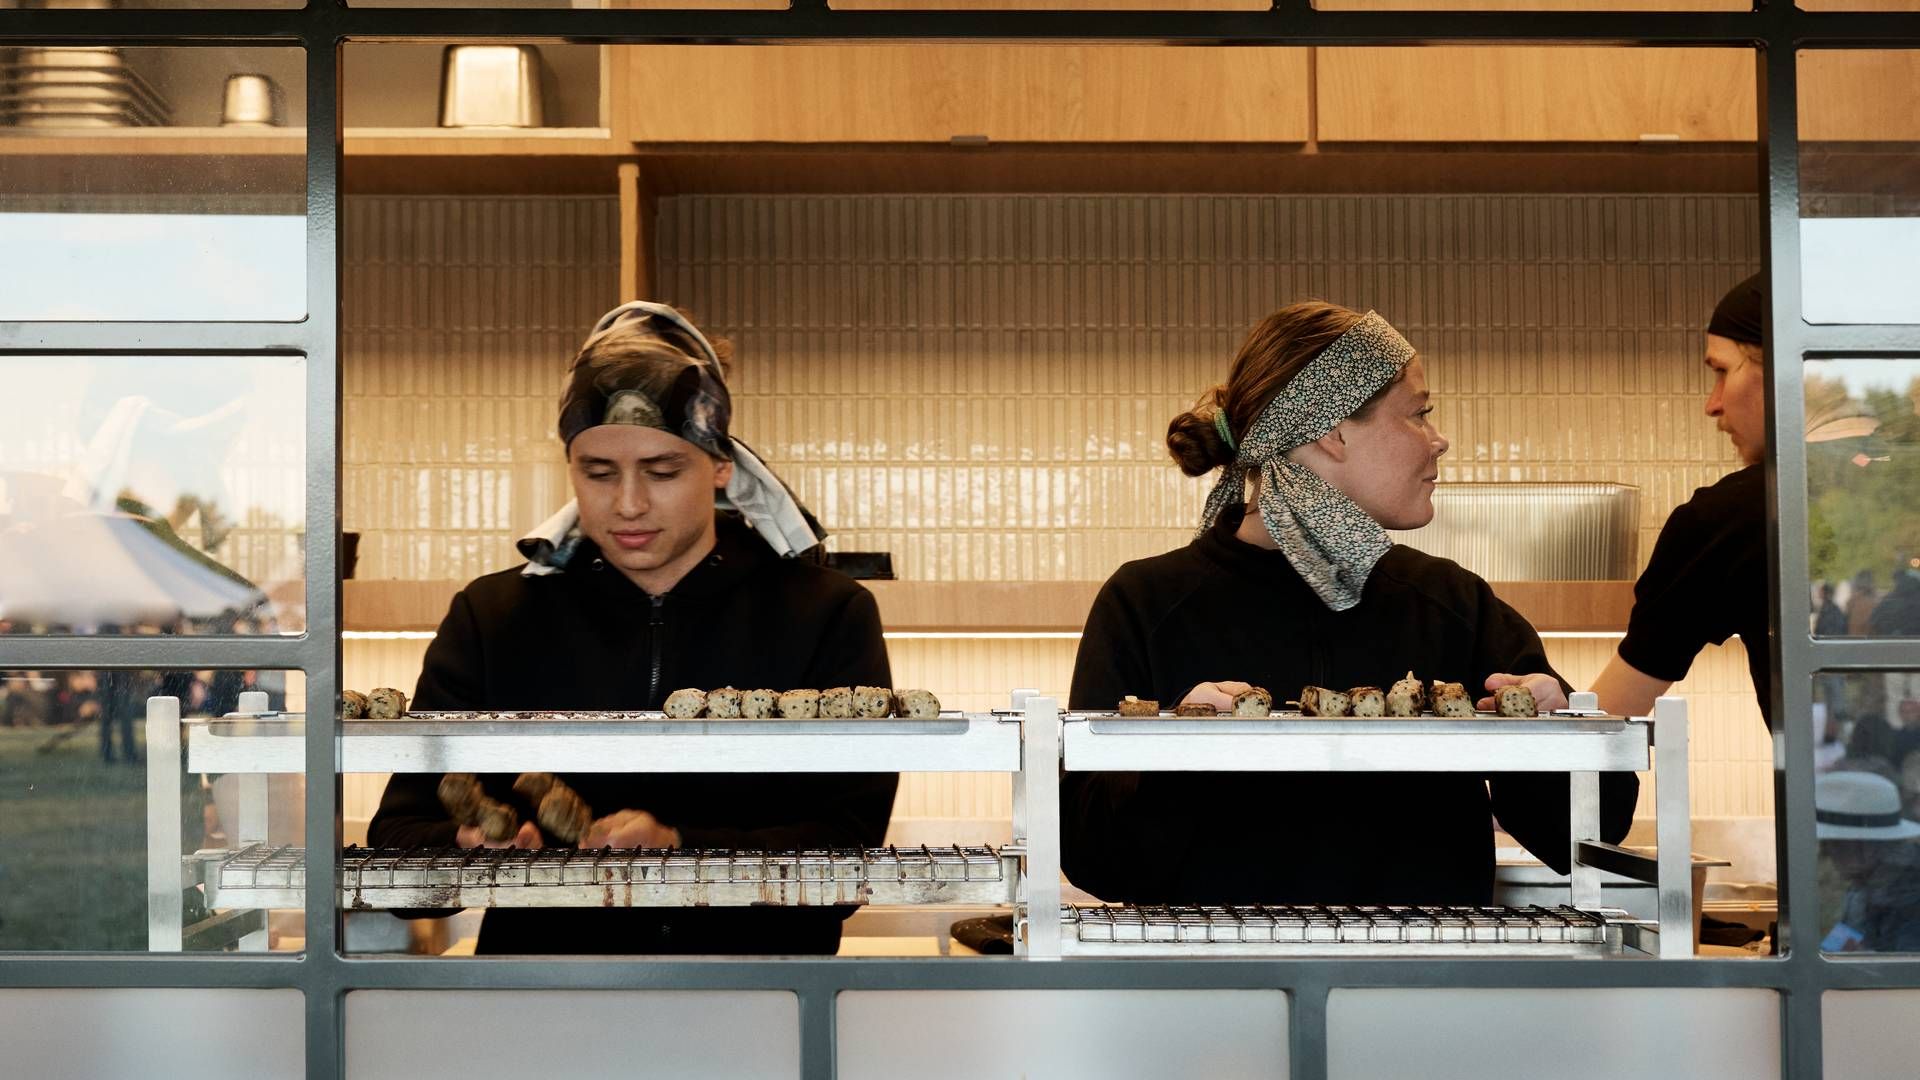 Sticks'n'Sushi har sidste år åbnet en række nye restauranter i London, ligesom vejen er blevet banet for yderligere åbninger her samt i Berlin. | Foto: Pr/ Sticks'n'sushi